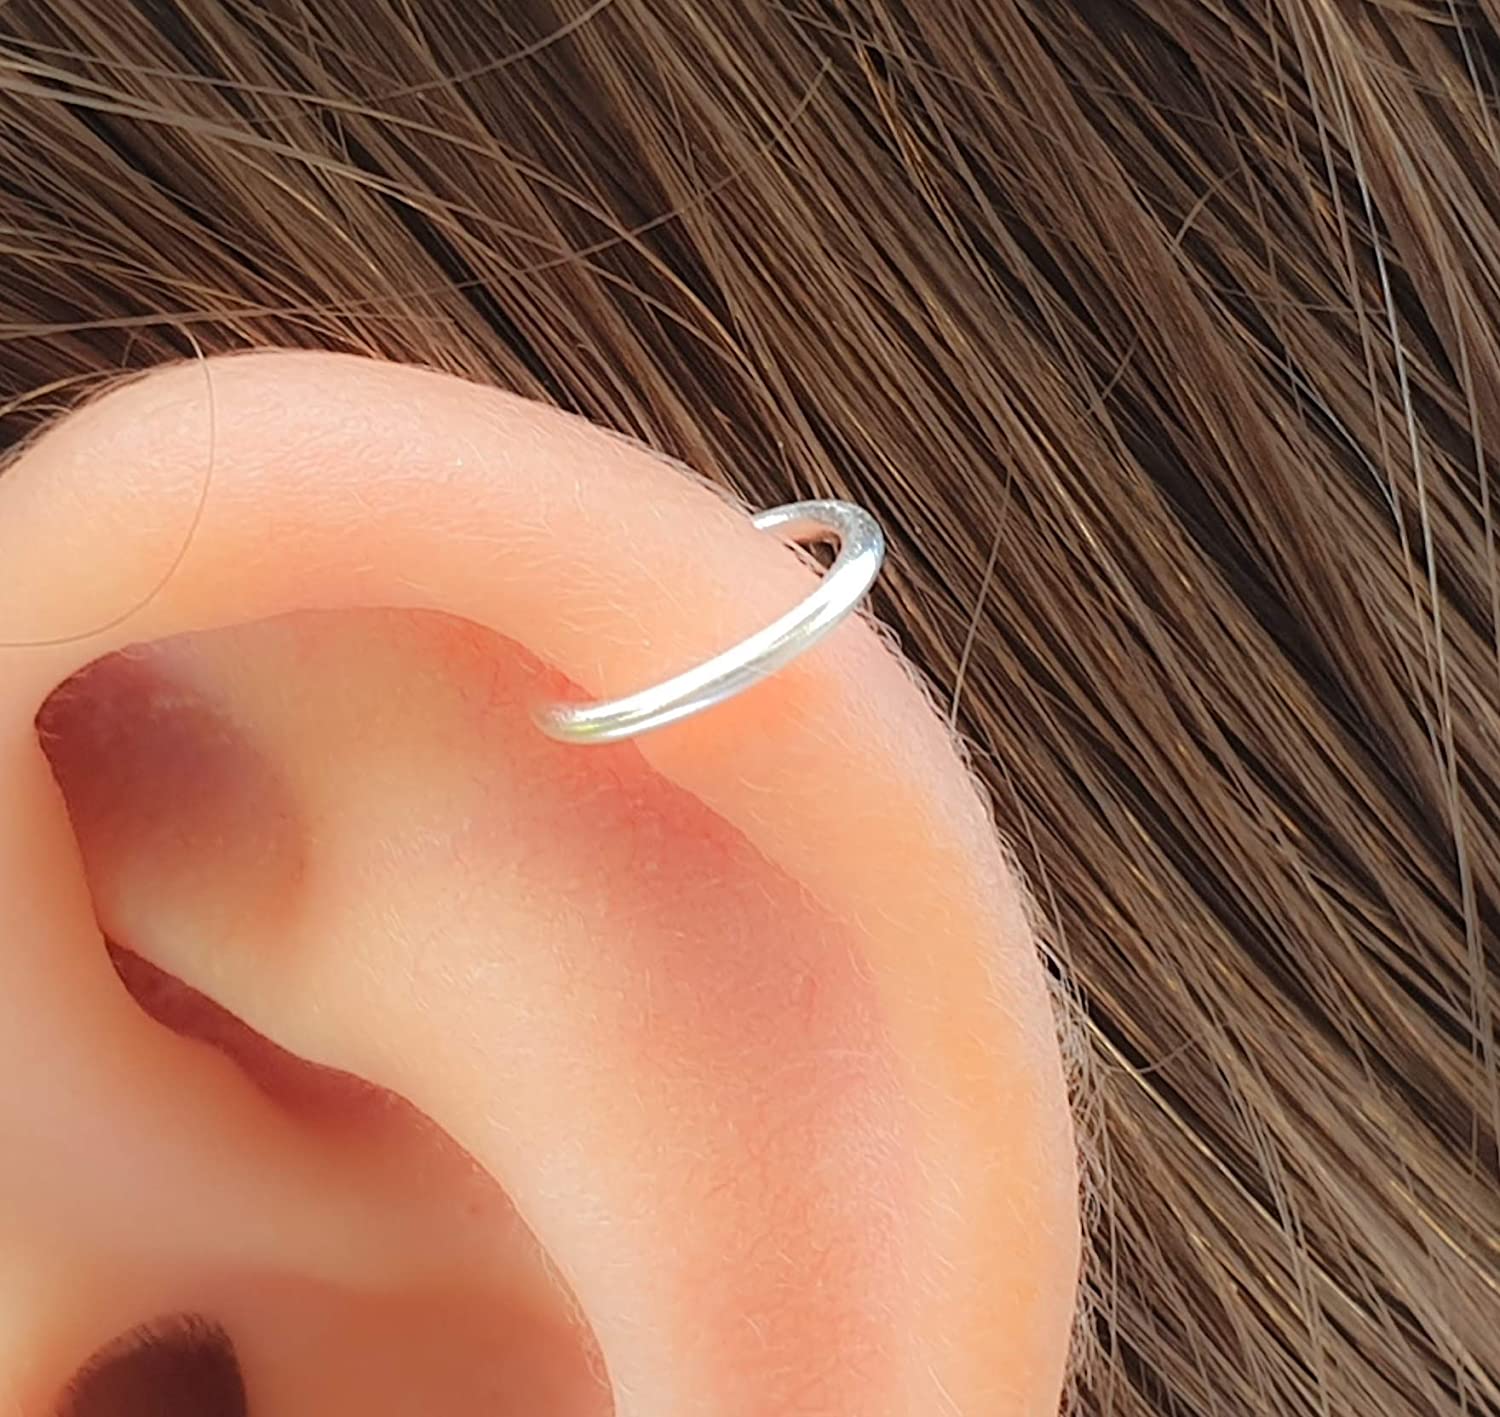 cartilage piercing hoop